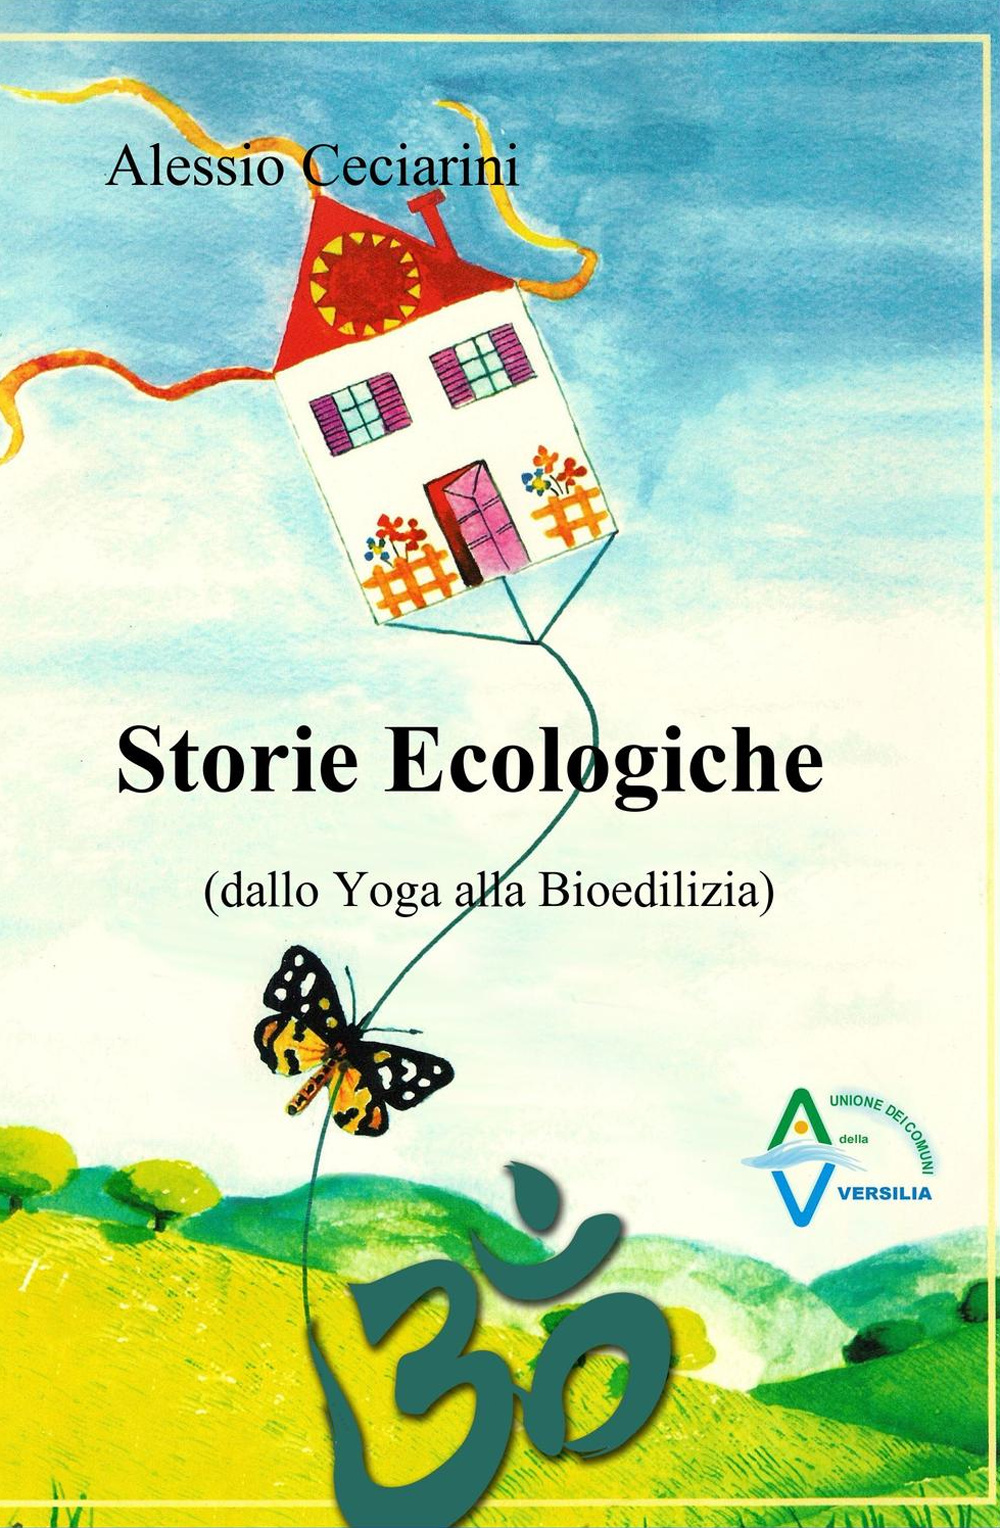 Storie ecologiche (dallo yoga alla bioedilizia)